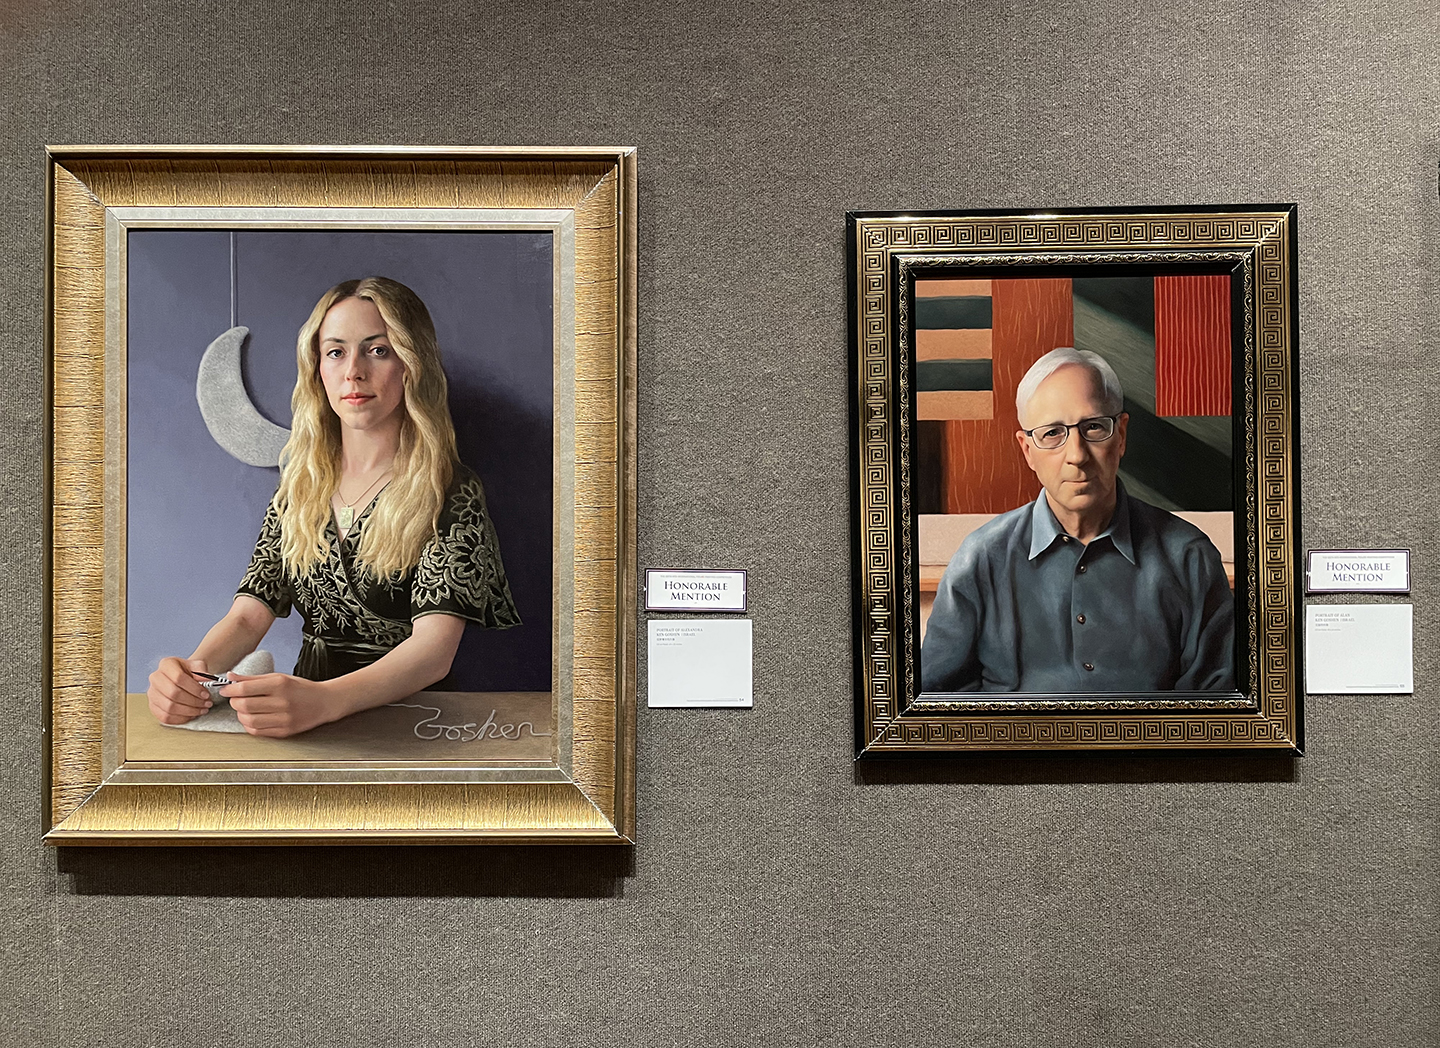 Họa sỹ Goshen nhận được Giải thưởng Danh dự cho hai bức tranh “Portrait of Alexandra” (Chân dung cô Alexandra) và “Portrait of Alan” (Chân dung ông Alan) tại Cuộc thi Vẽ tranh Nhân vật Quốc tế NTD lần thứ sáu. (Ảnh: Đăng dưới sự cho phép của họa sỹ Ken Goshen)